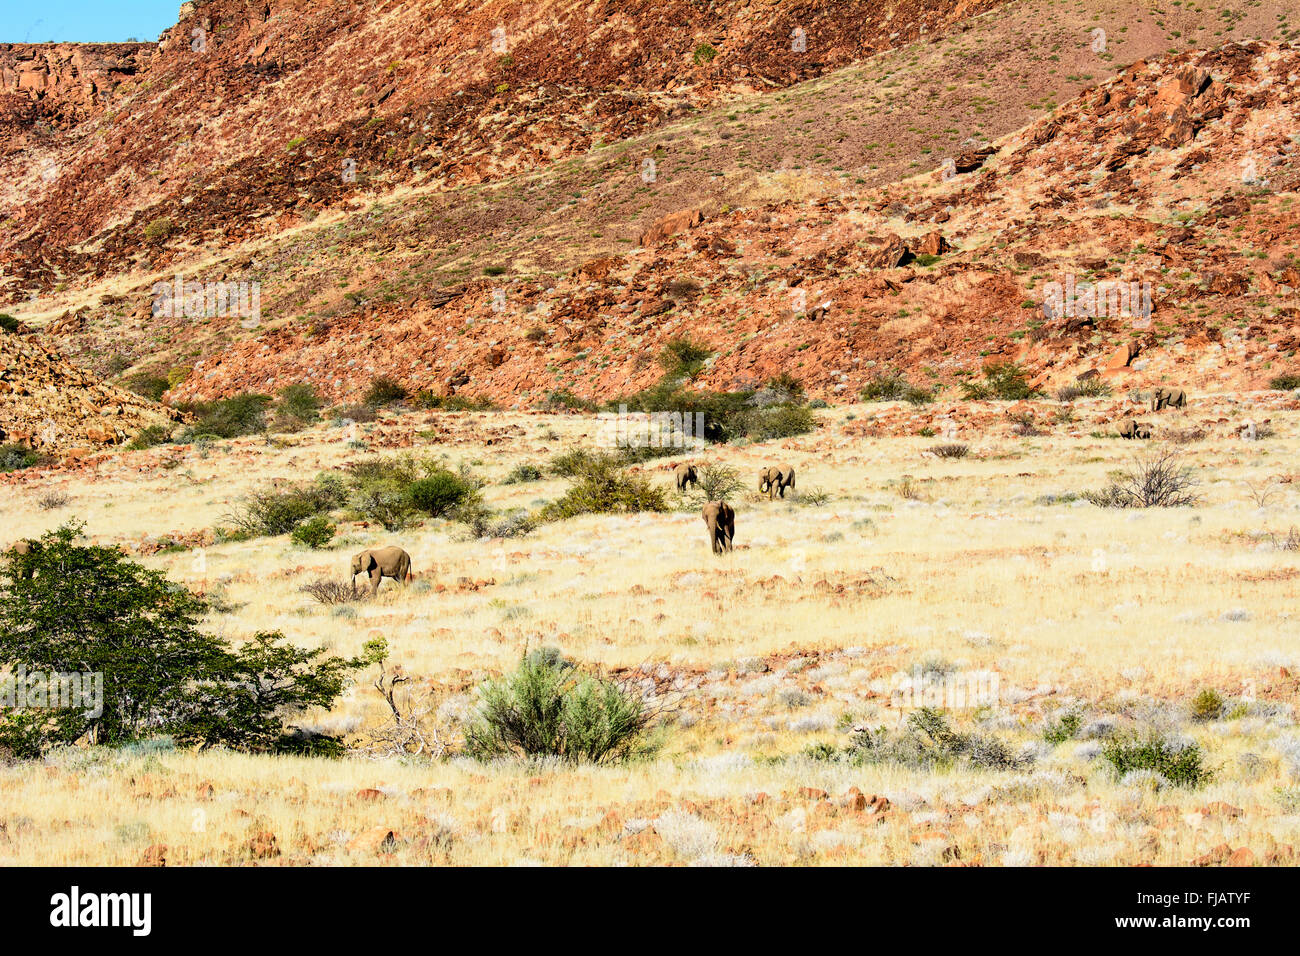 Los elefantes del desierto en su entorno natural. Foto de stock